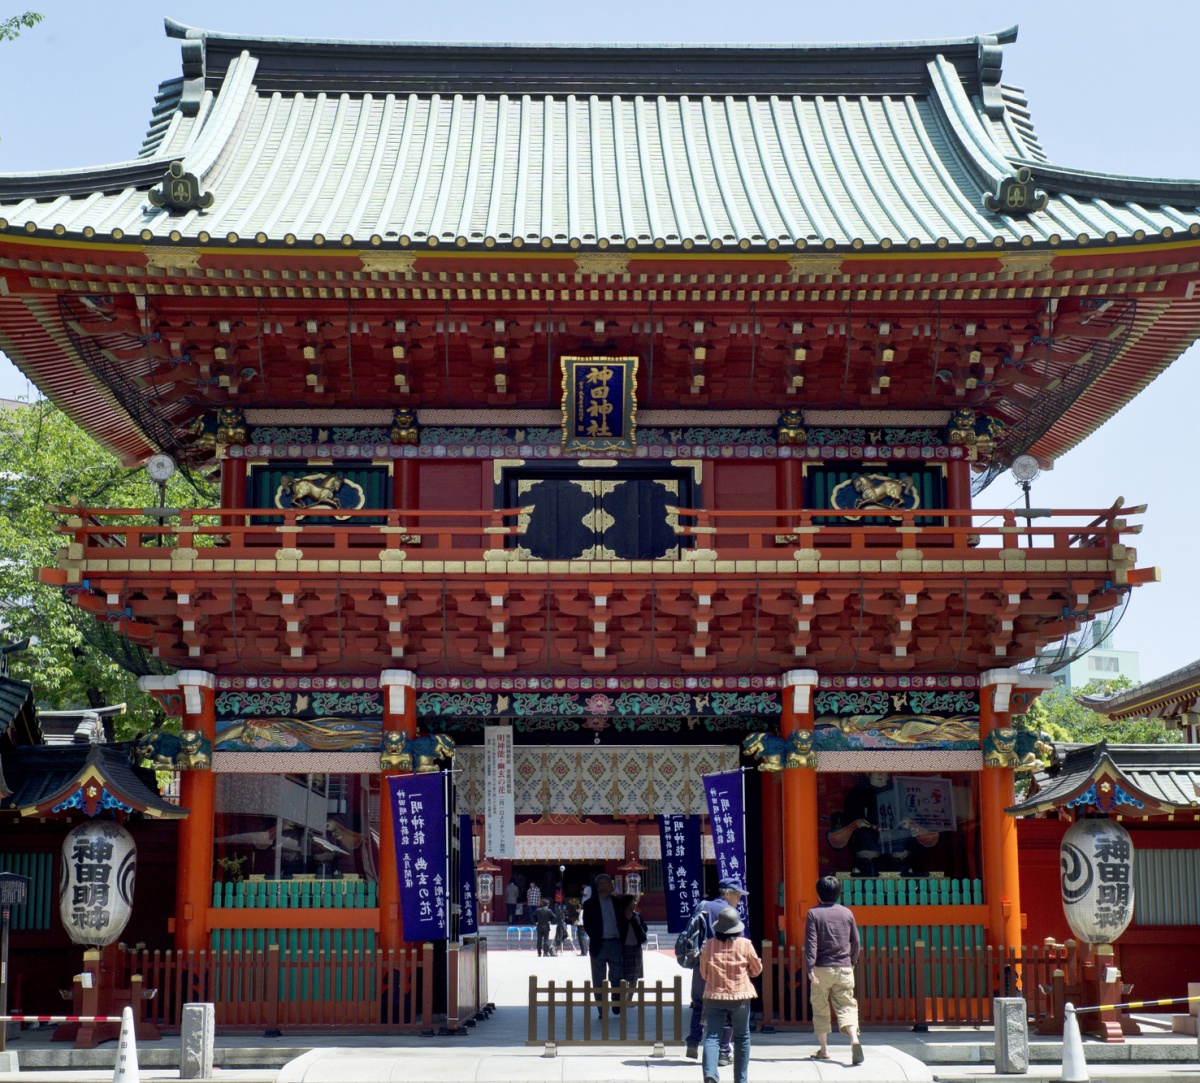 2. ศาลเจ้าคันดะเมียวจิน (Kanda Myoujin Shrine) ในกรุงโตเกียว (Tokyo) จากเรื่อง Love Live!